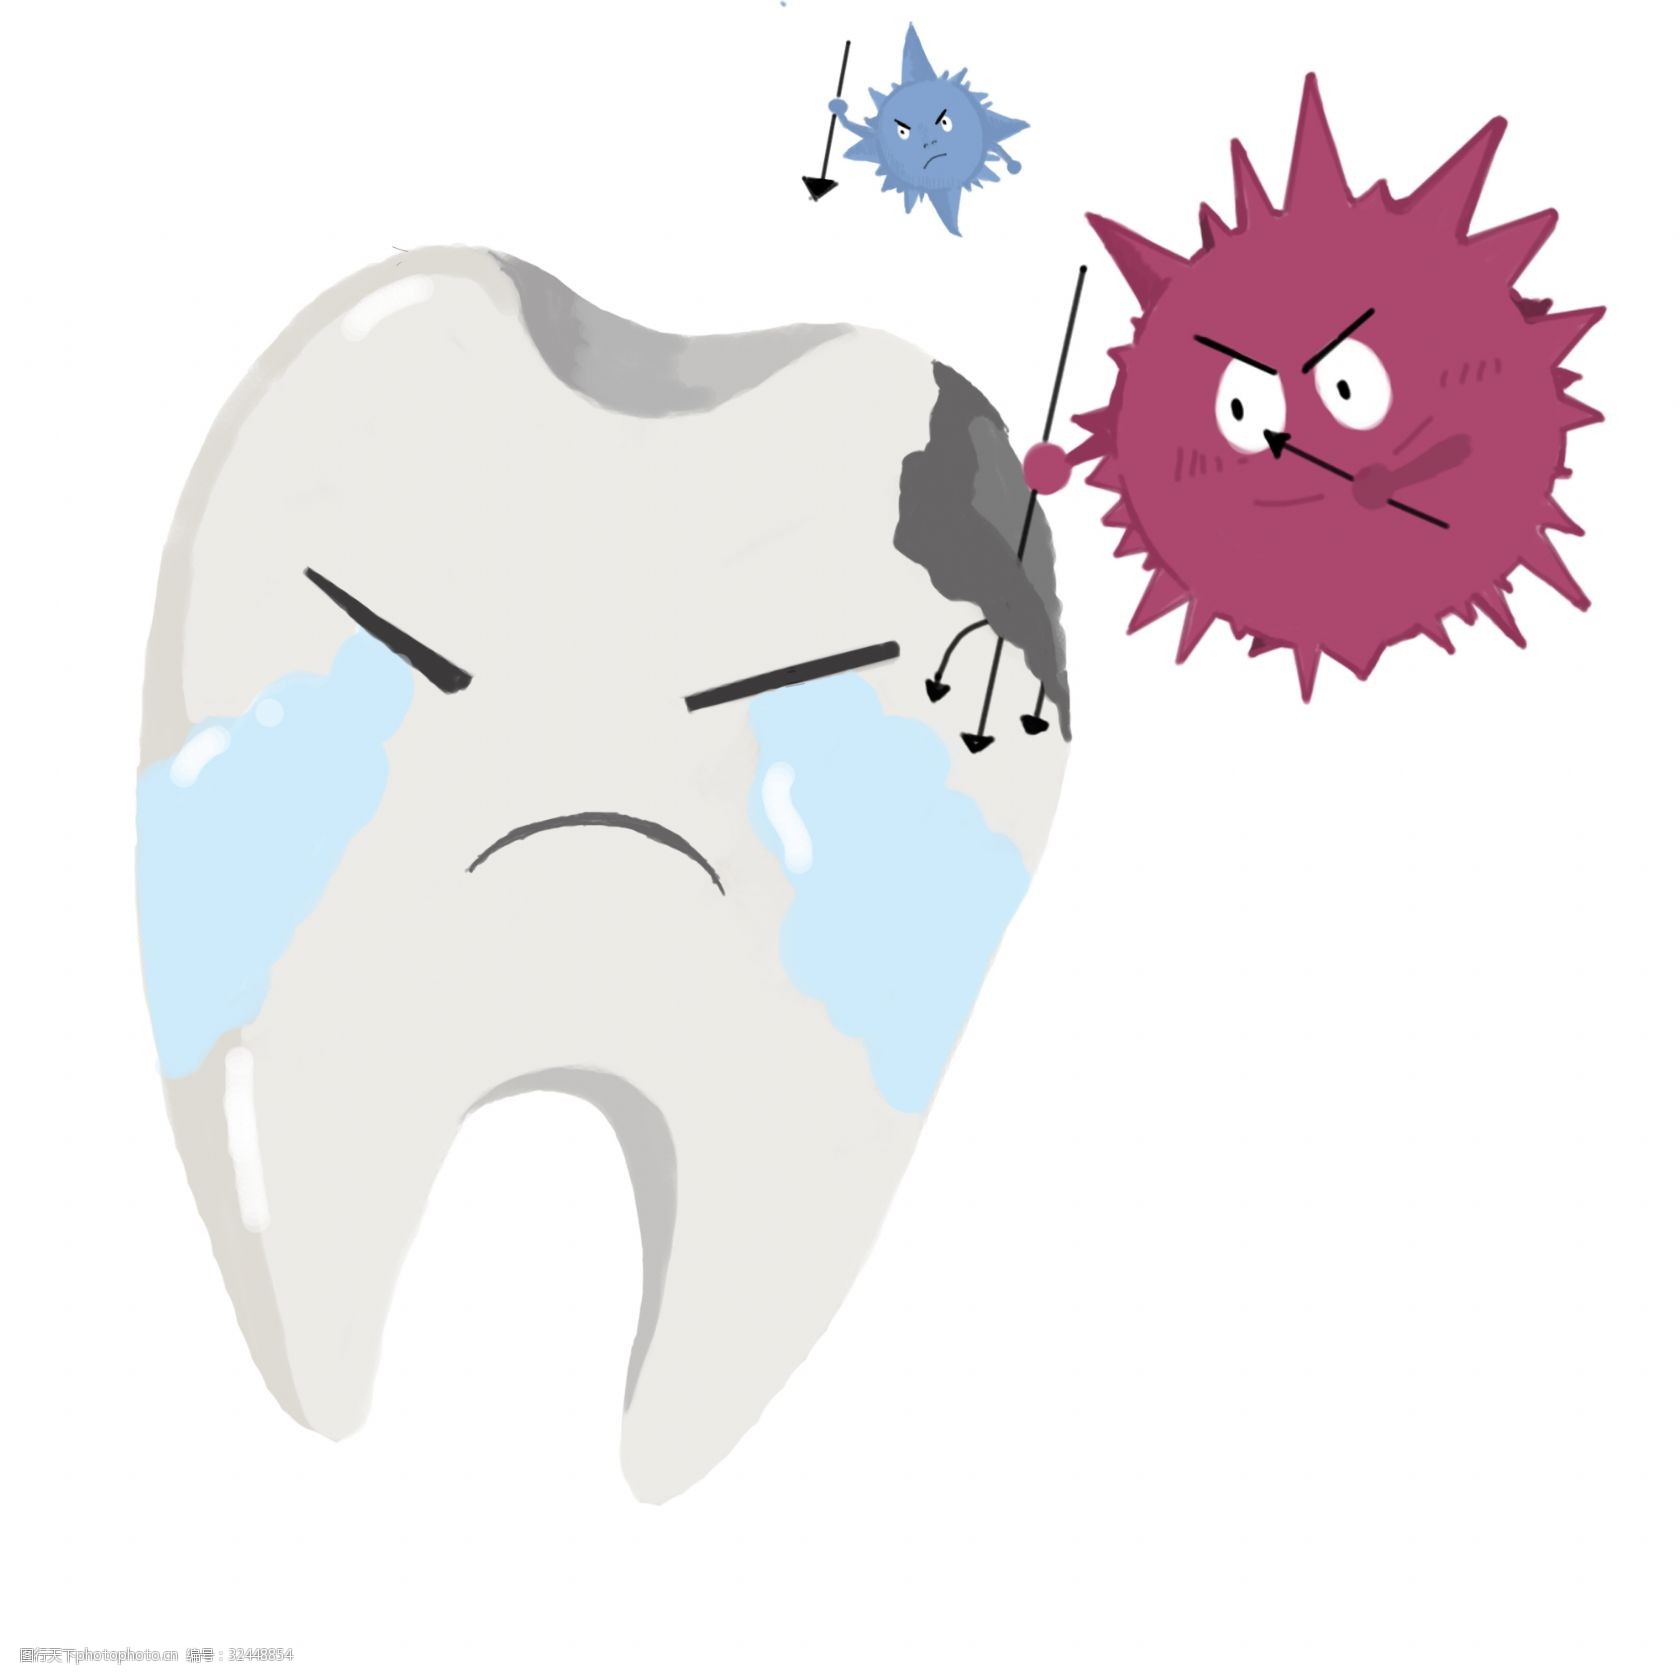 关键词:牙齿的有害细菌插画 白色的牙齿 卡通插画 细菌插画 有害细菌